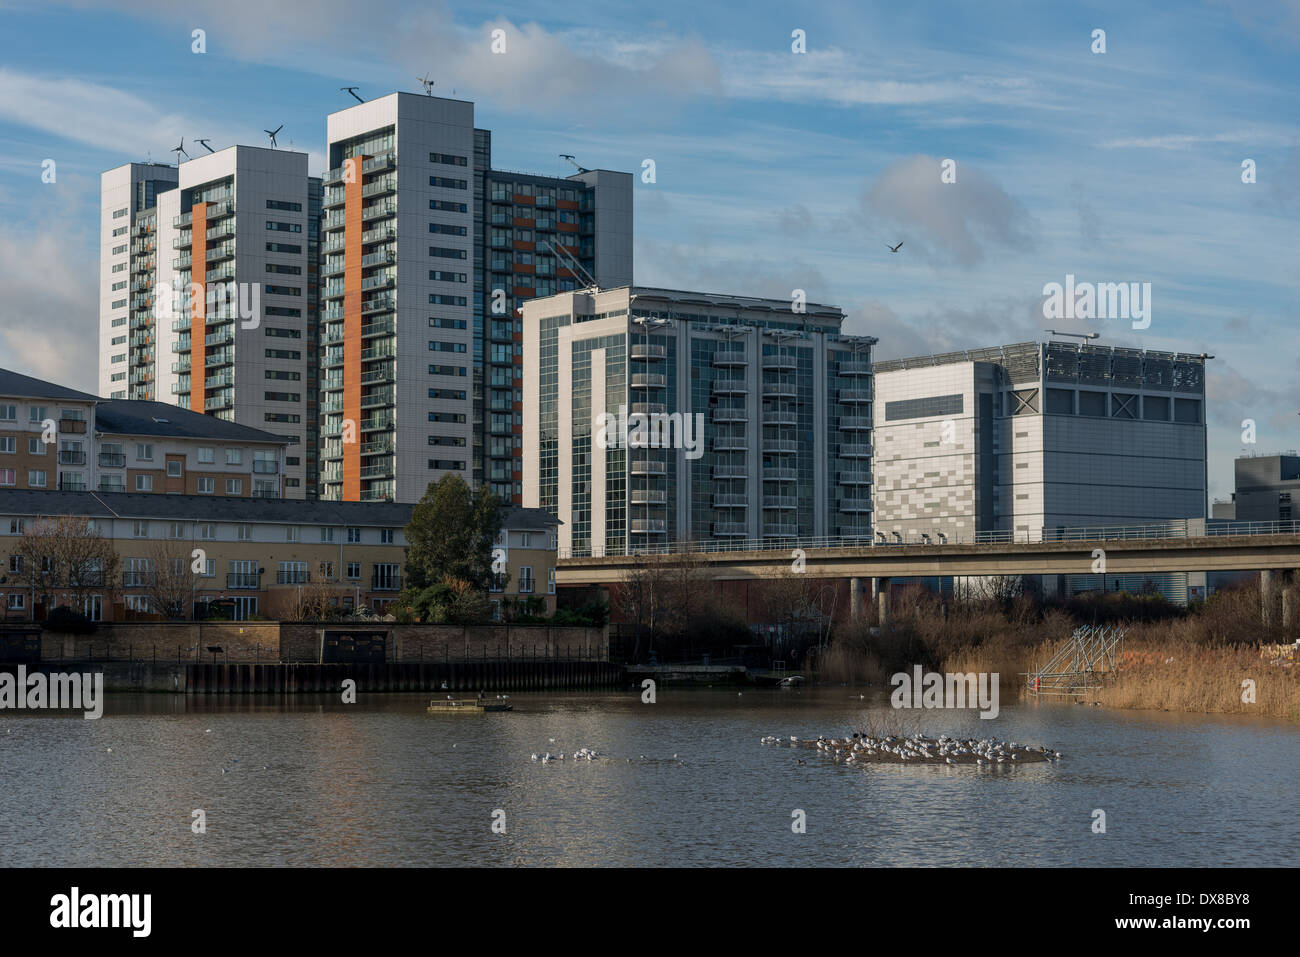 La nuova build alto appartamenti residenziali vicino Oriente India Dock evidenziare la crescita economica della zona est di Londra con Canary Wharf vicino Foto Stock